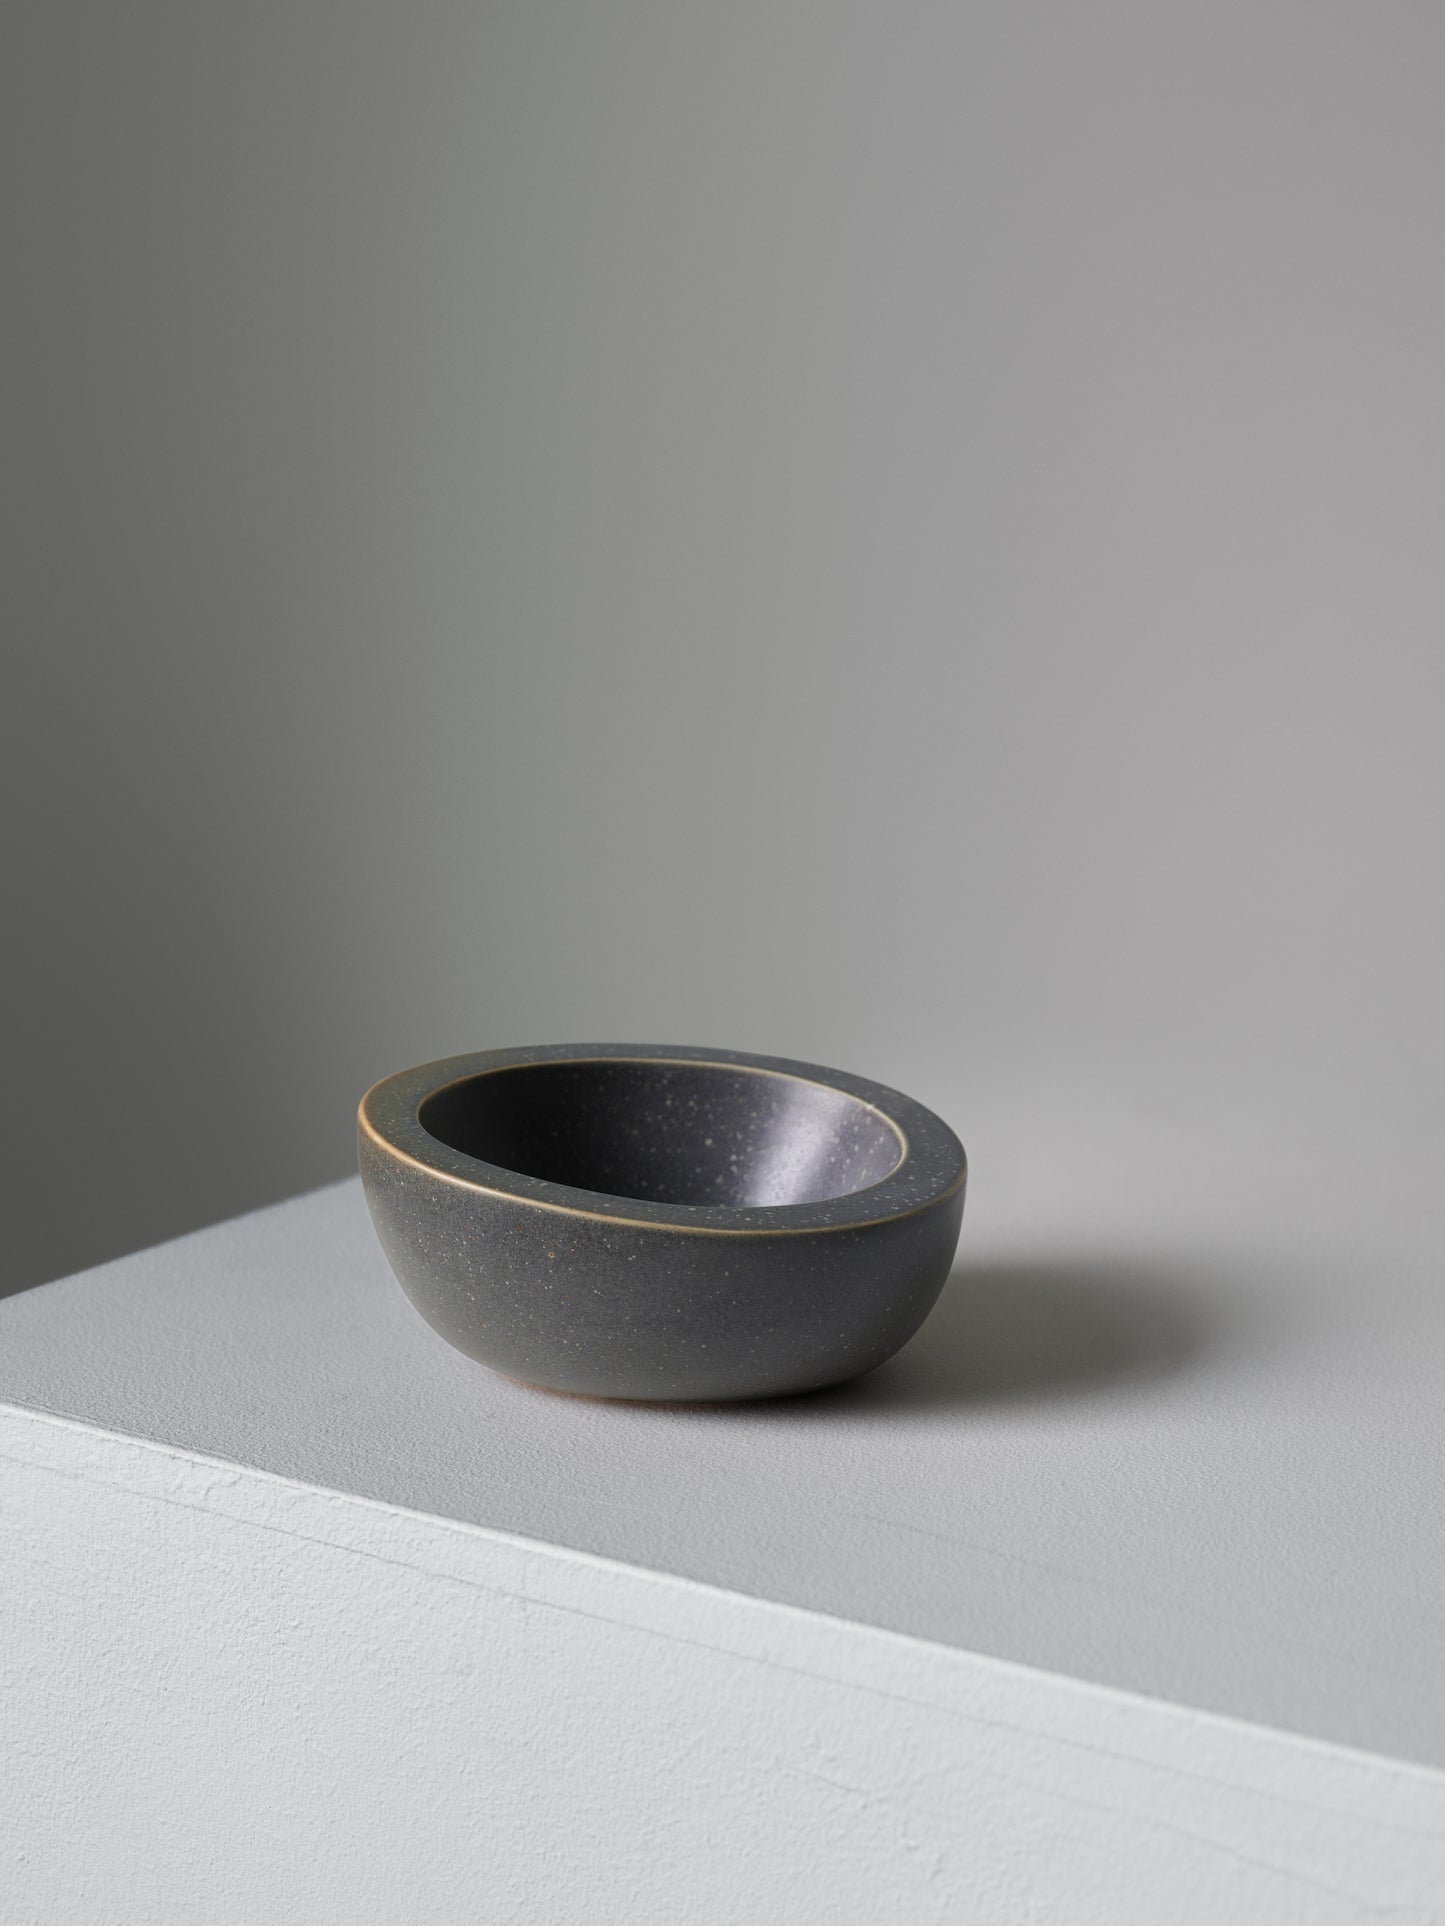 Fredrik Karlsson x Mimmi Blomqvist ceramics #7, 2020